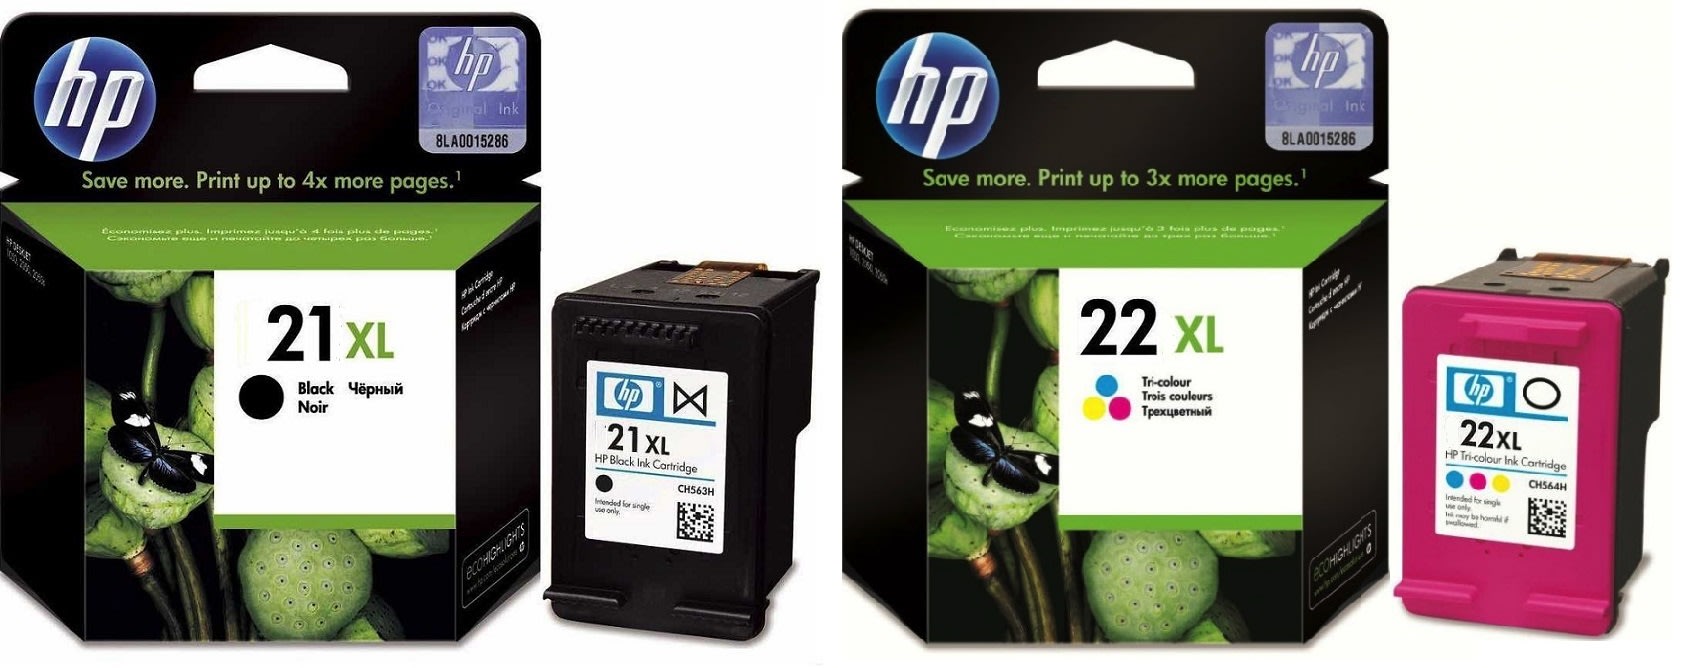 Картриджи hp 21XL 22XL для HP Officejet 4319. Купить комплект оригинальных чернил.